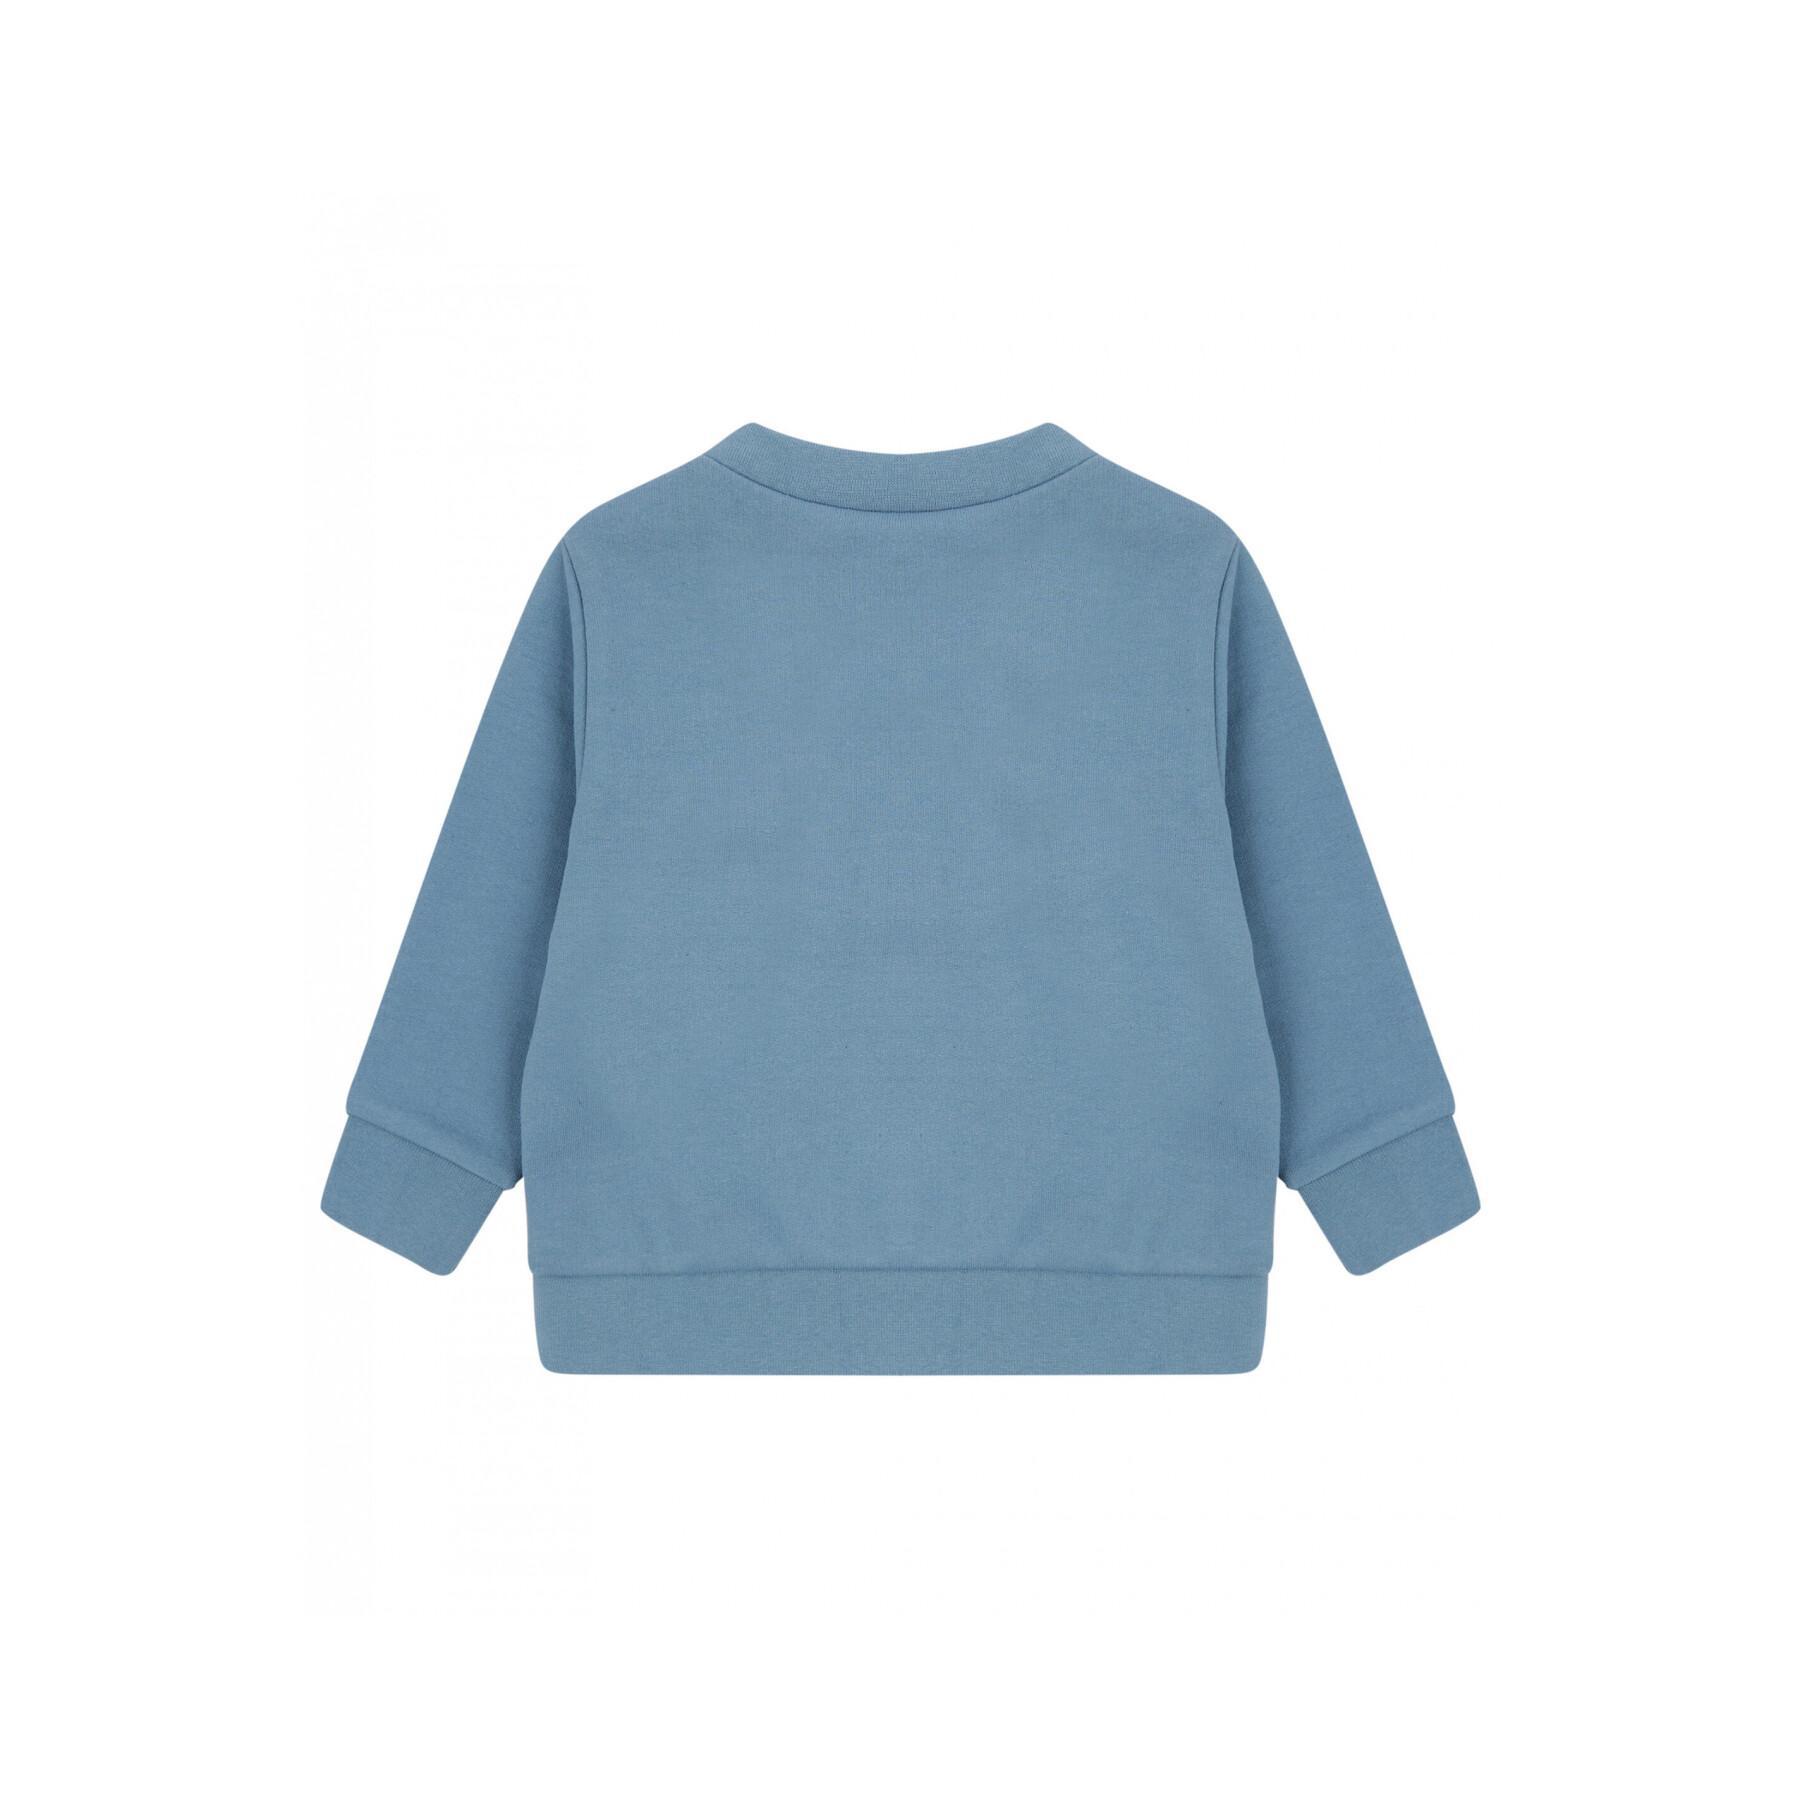 Sweatshirt eco-friendly baby Larkwood